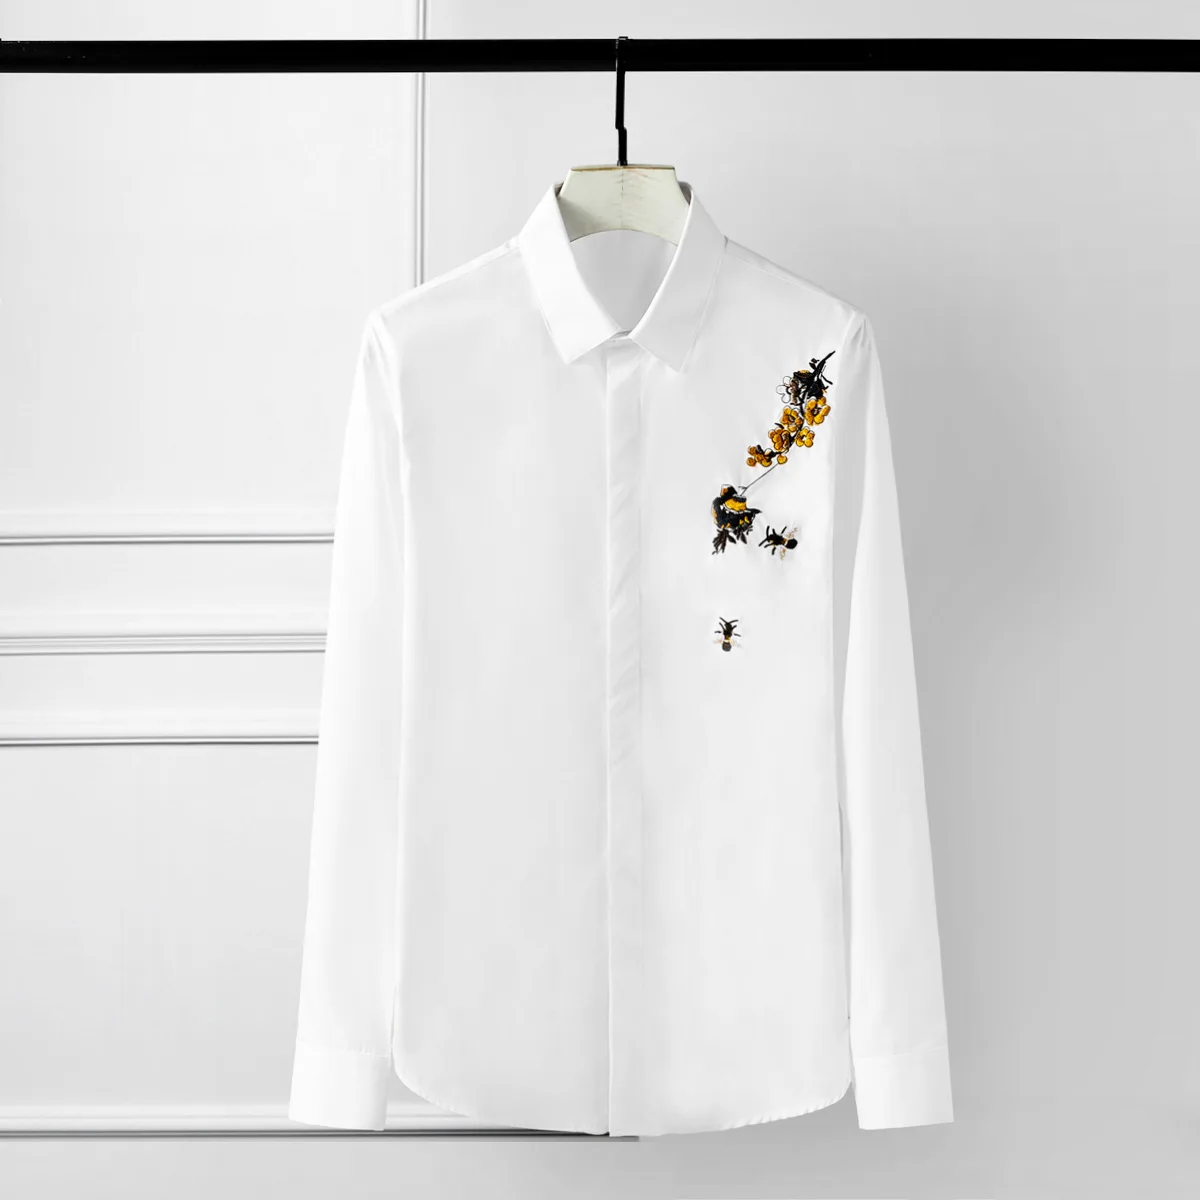 

Мужская приталенная рубашка с длинным рукавом, черная или белая Повседневная рубашка с 3d вышивкой пчелы, большие размеры до 4xl, лето 2021